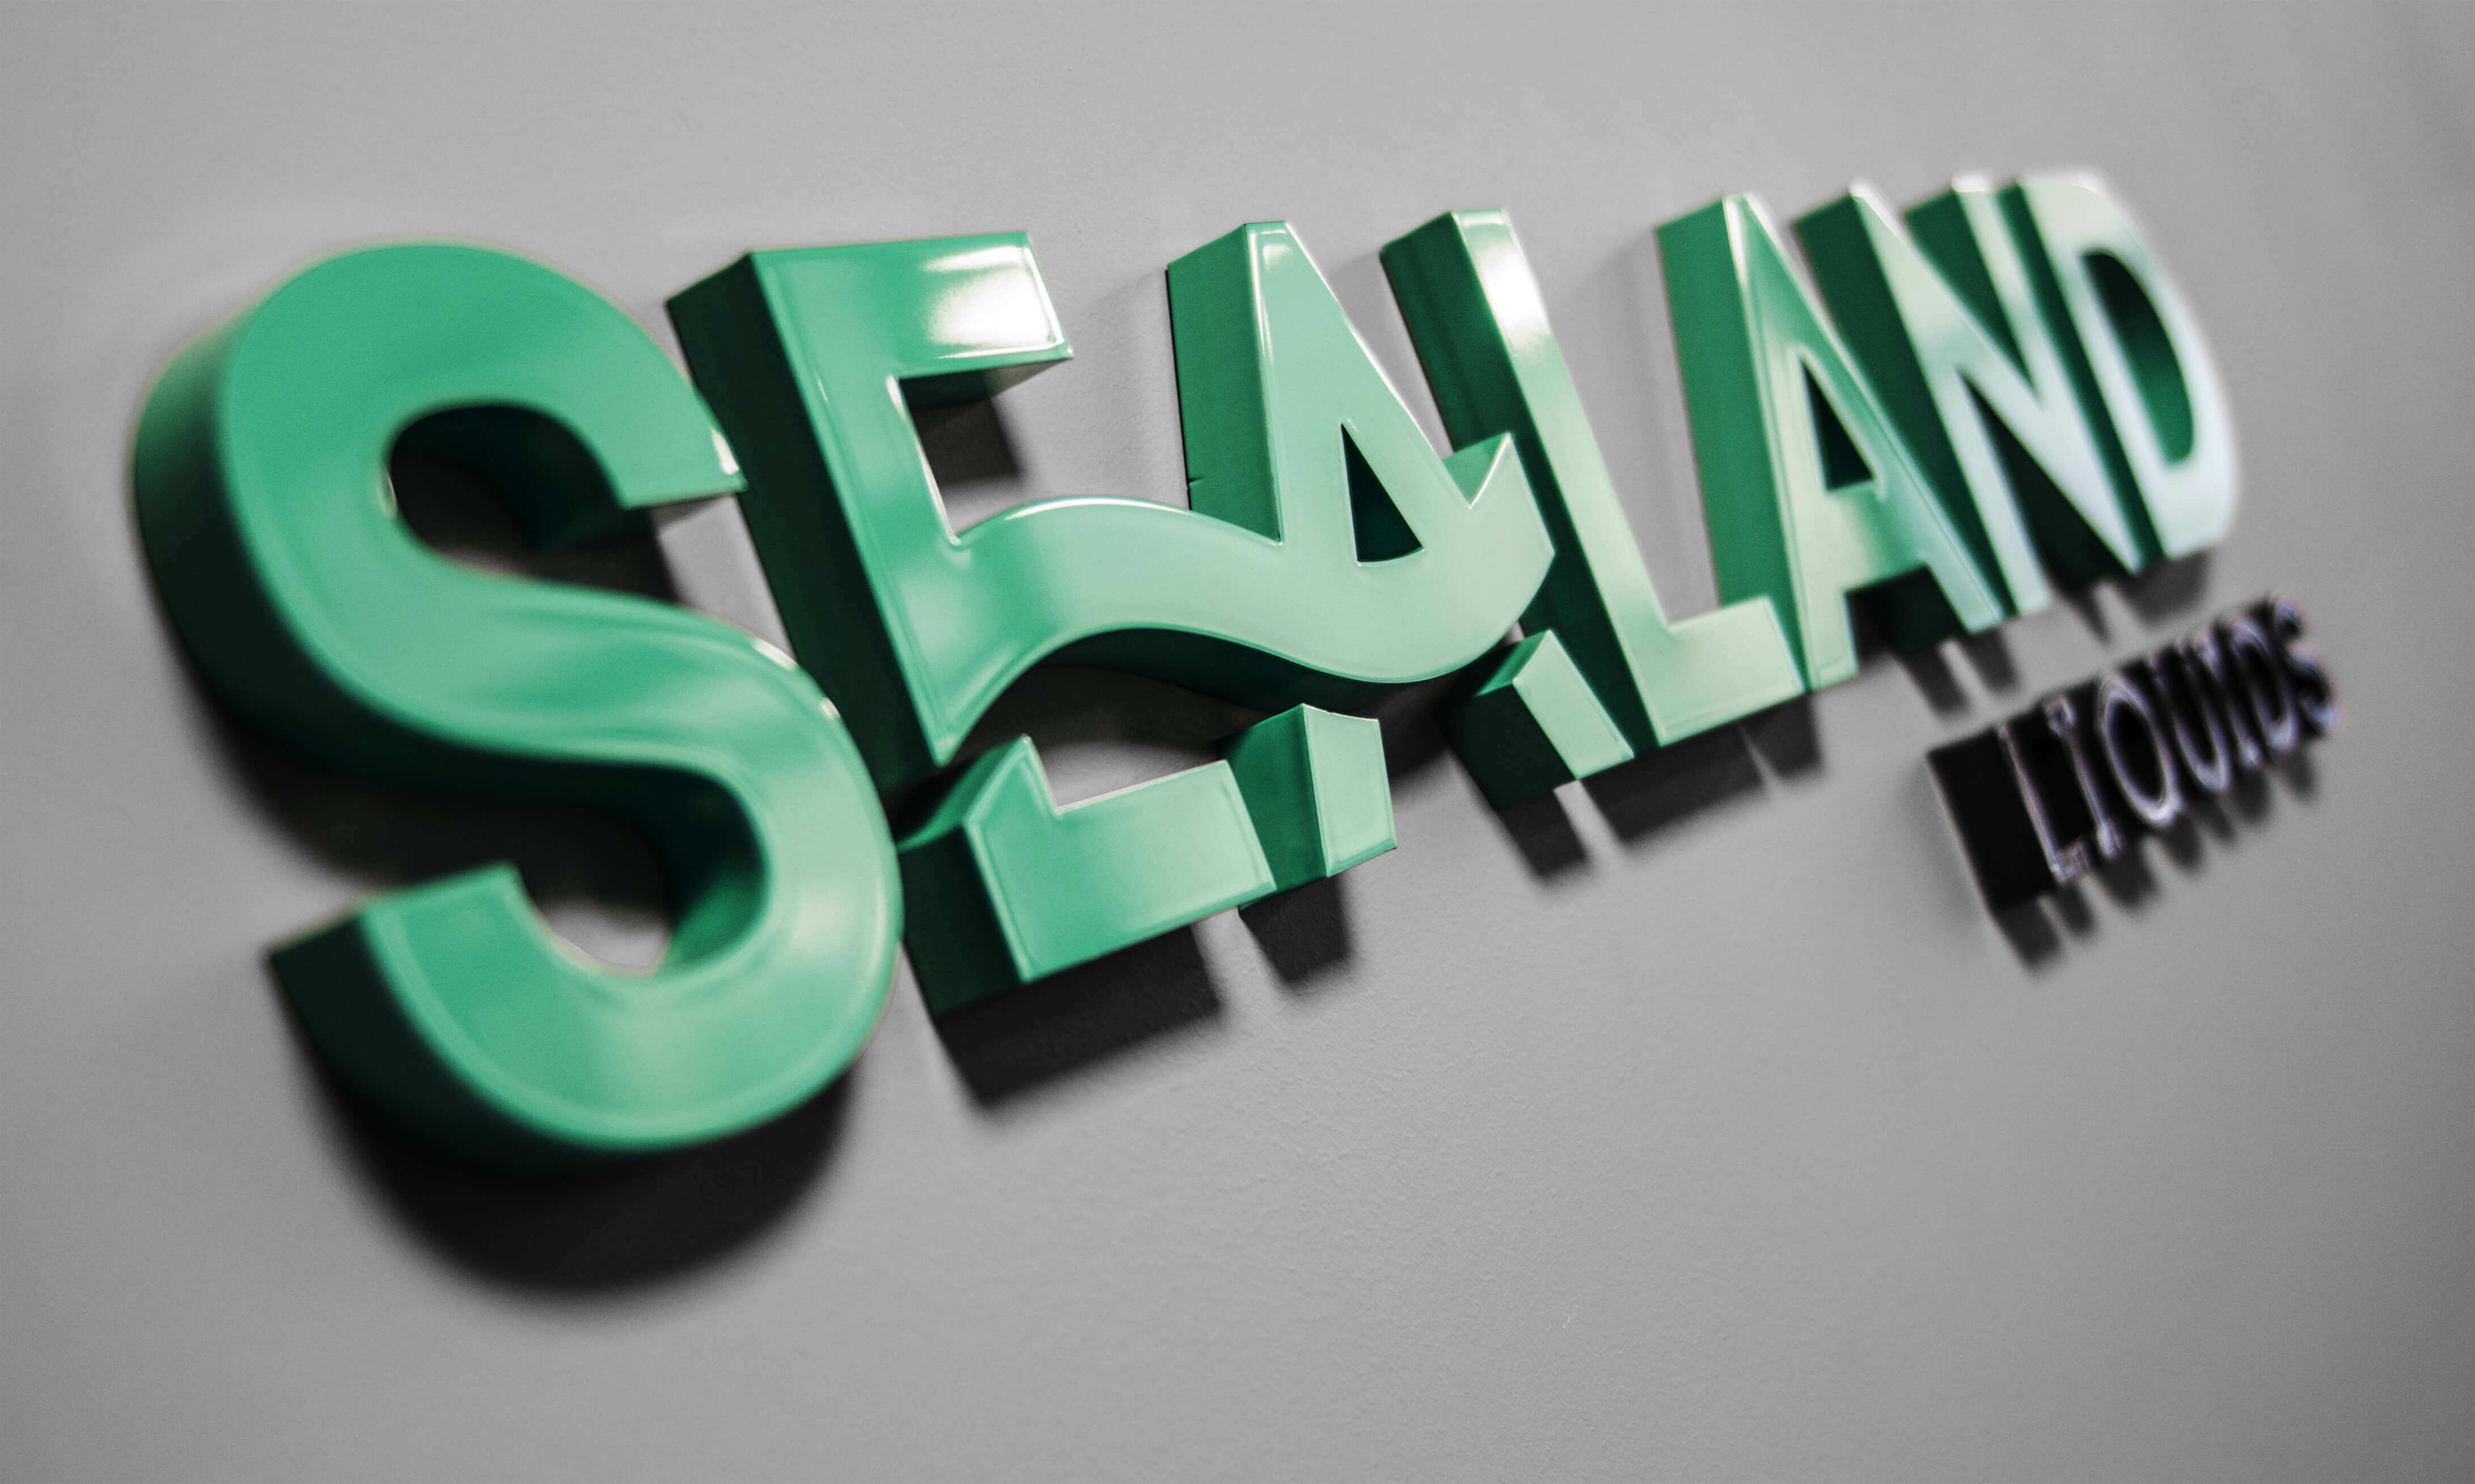 Sealand - Sealand - lettere 3D poste sul muro dipinte a spruzzo